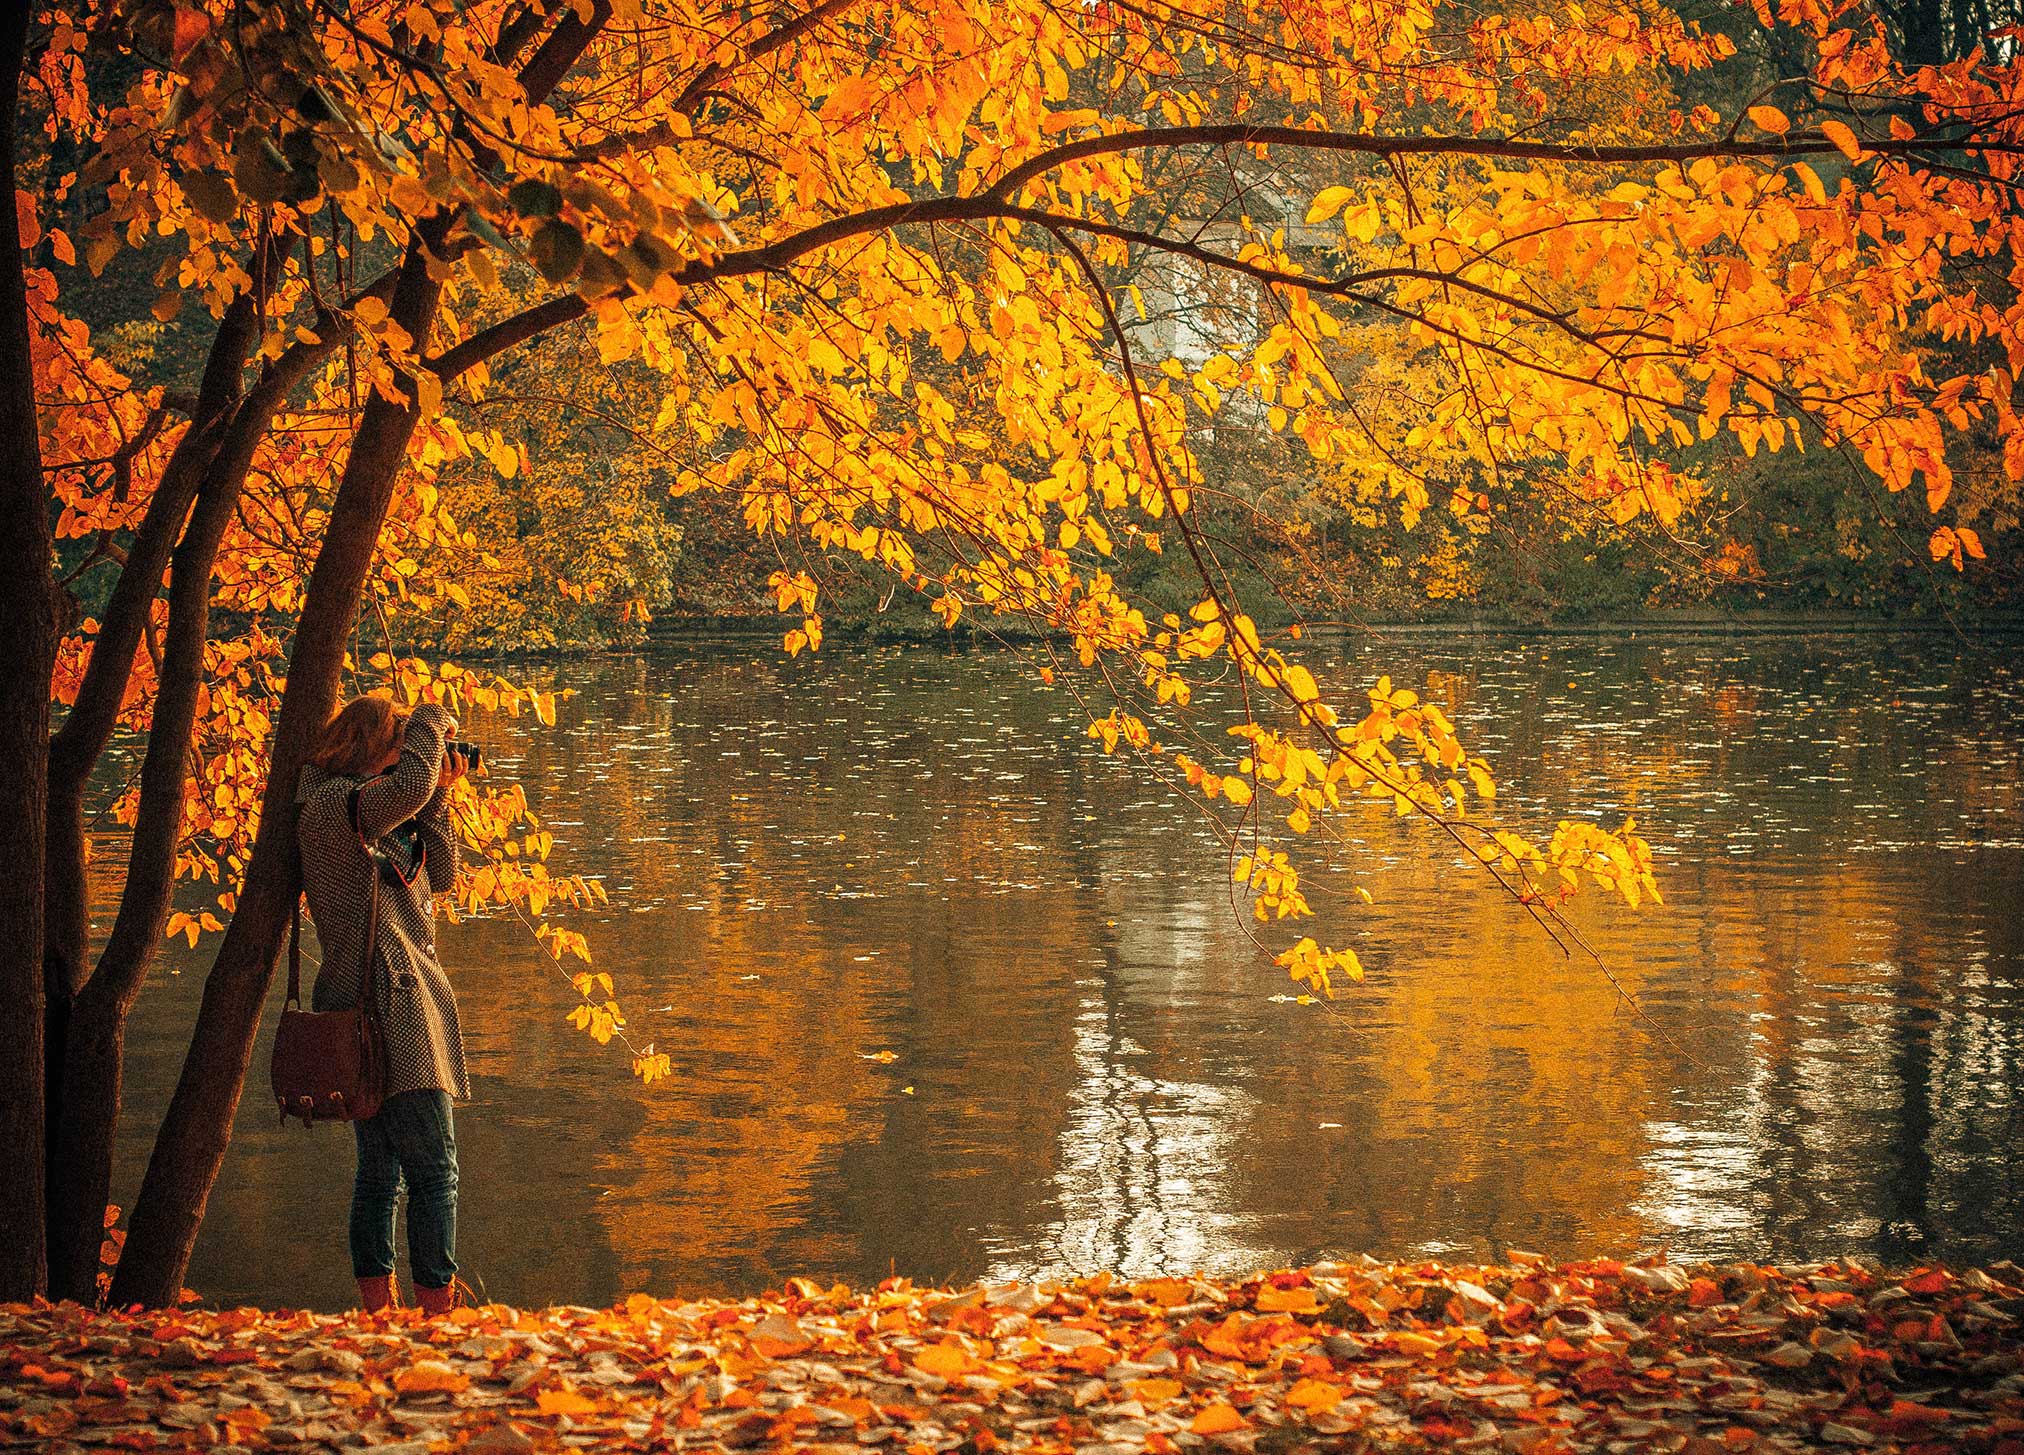 Toronto during autumn season